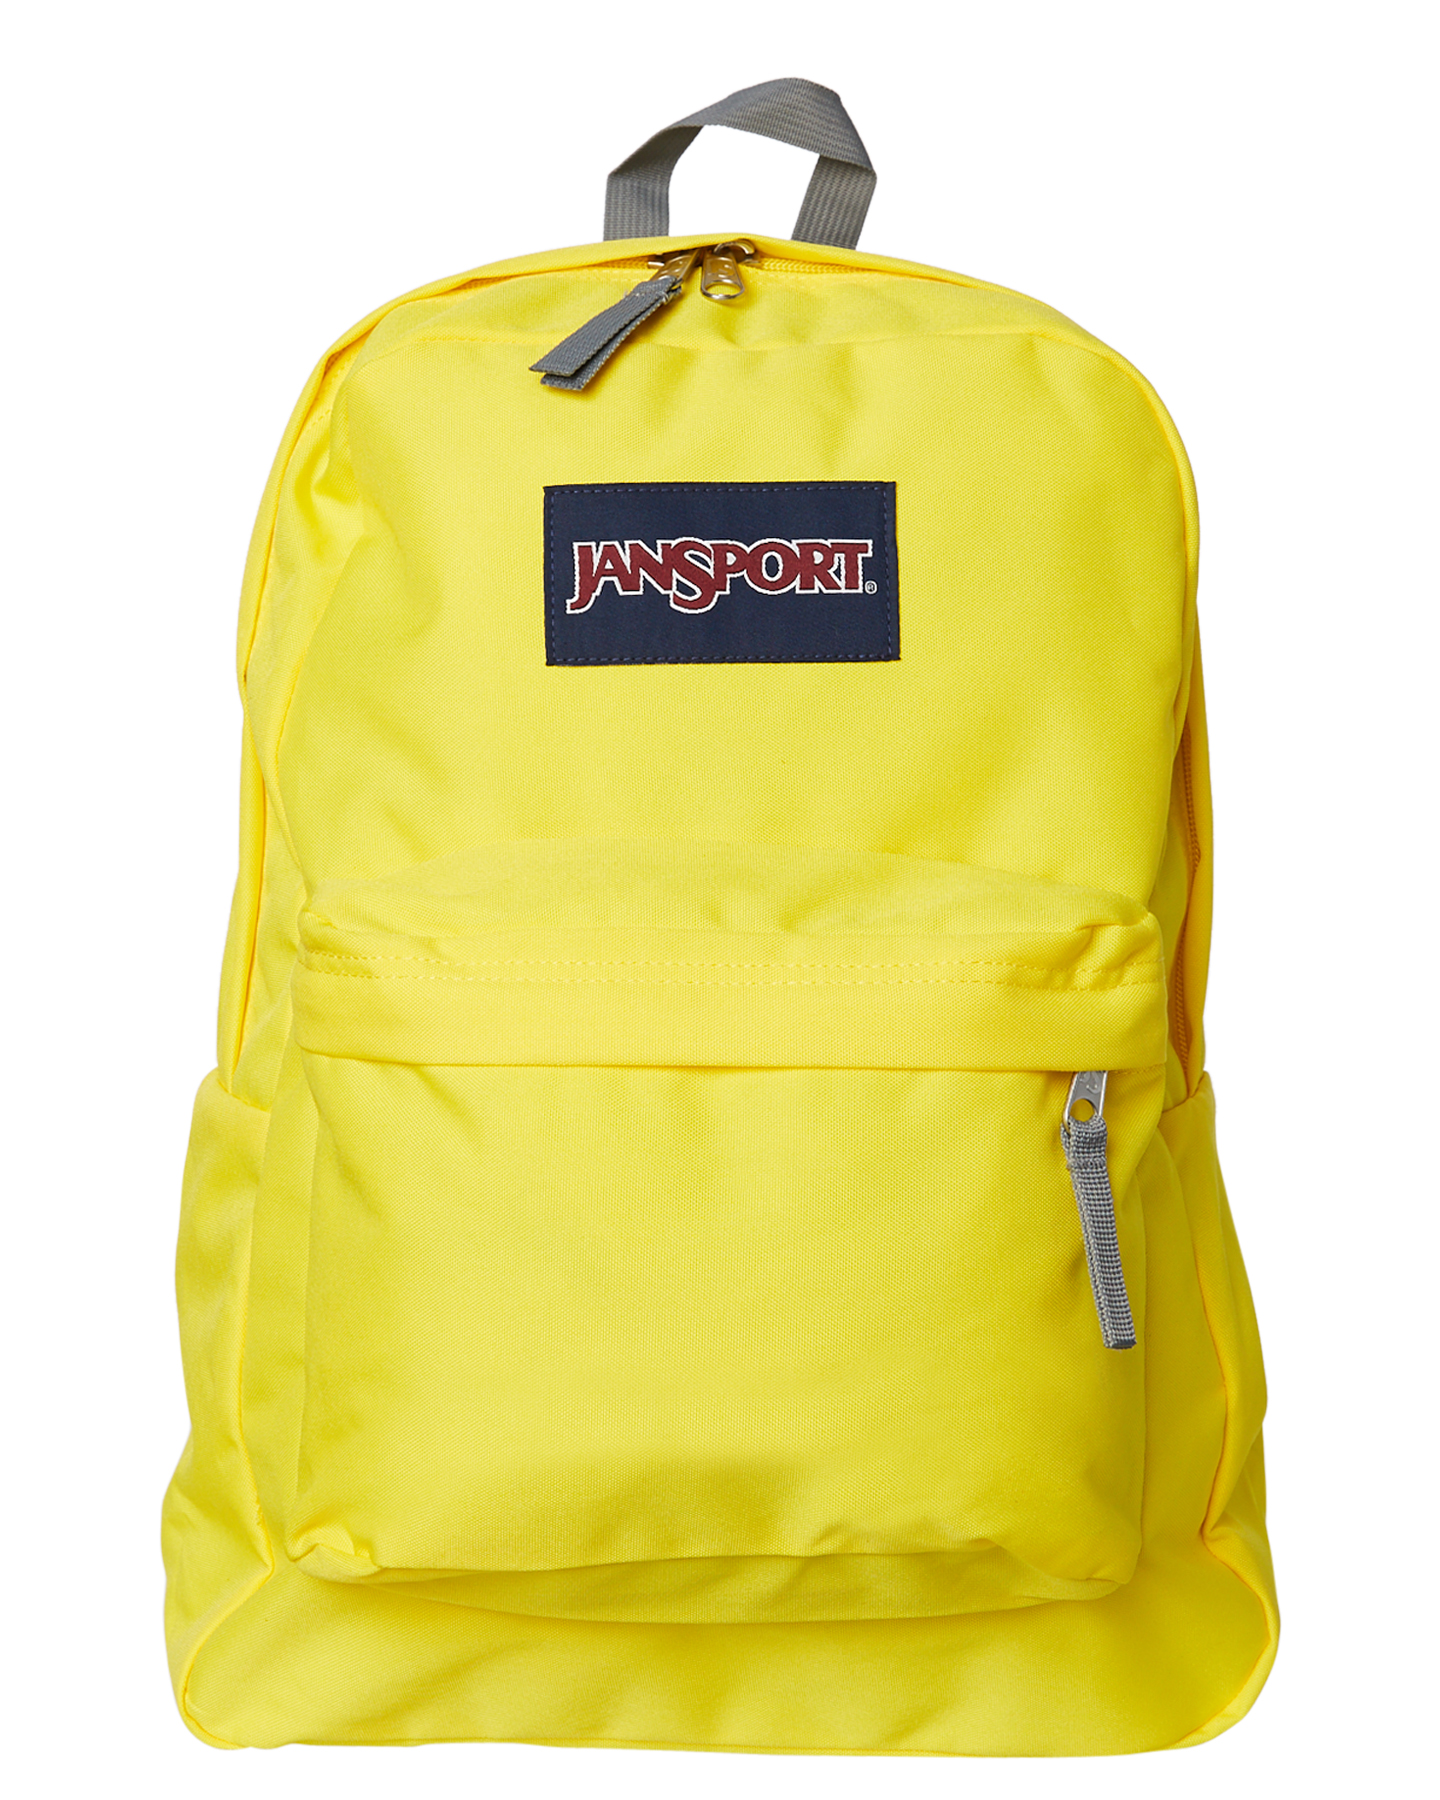 Jansport Superbreak Backpack Yellow | IUCN Water